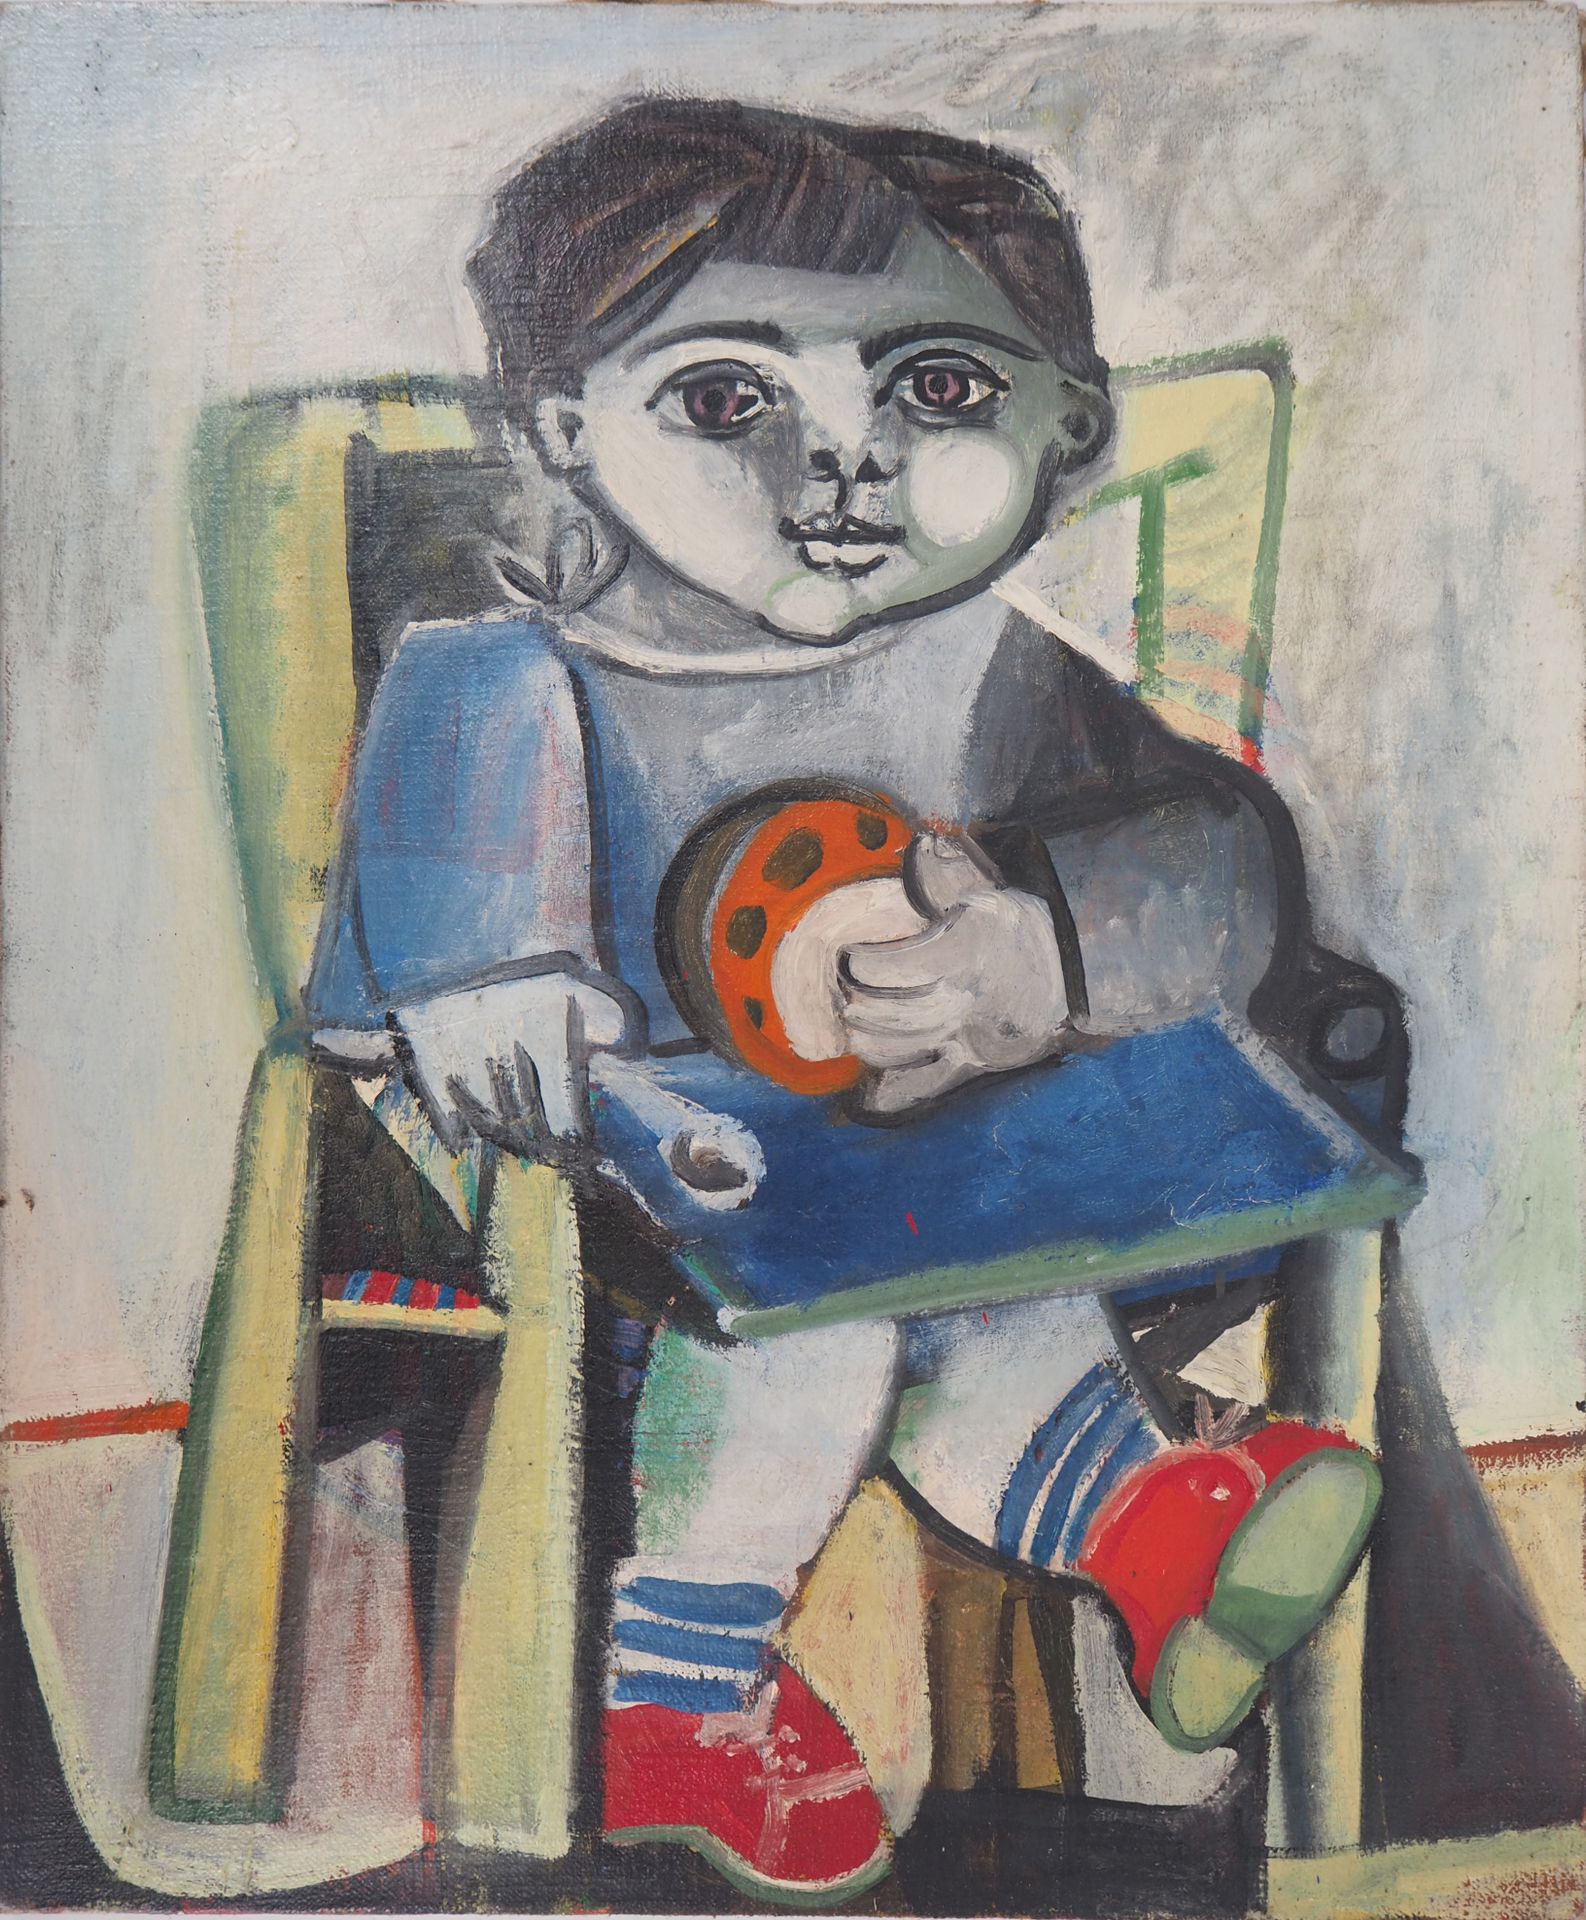 Carlos CARNERO Carlos CARNERO (1922-1980)

Homenaje a Picasso: Niño en una silla&hellip;